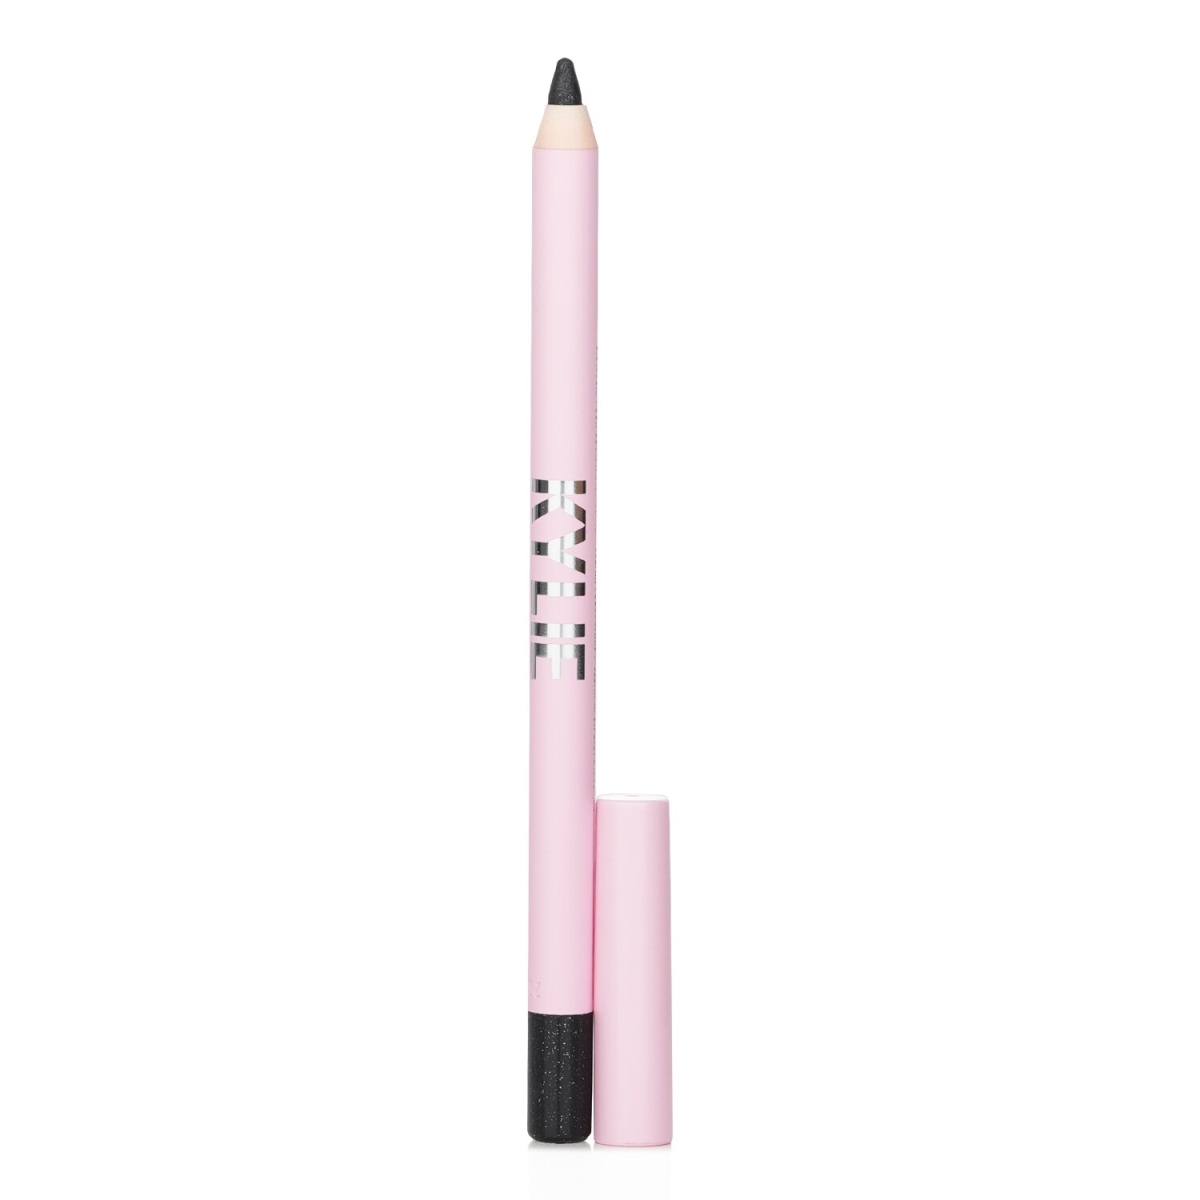 Kylie By Kylie Jenner 327231 1.2 g Kyliner Gel Eyeliner Pencil&#44; No.009 Black Shimmer